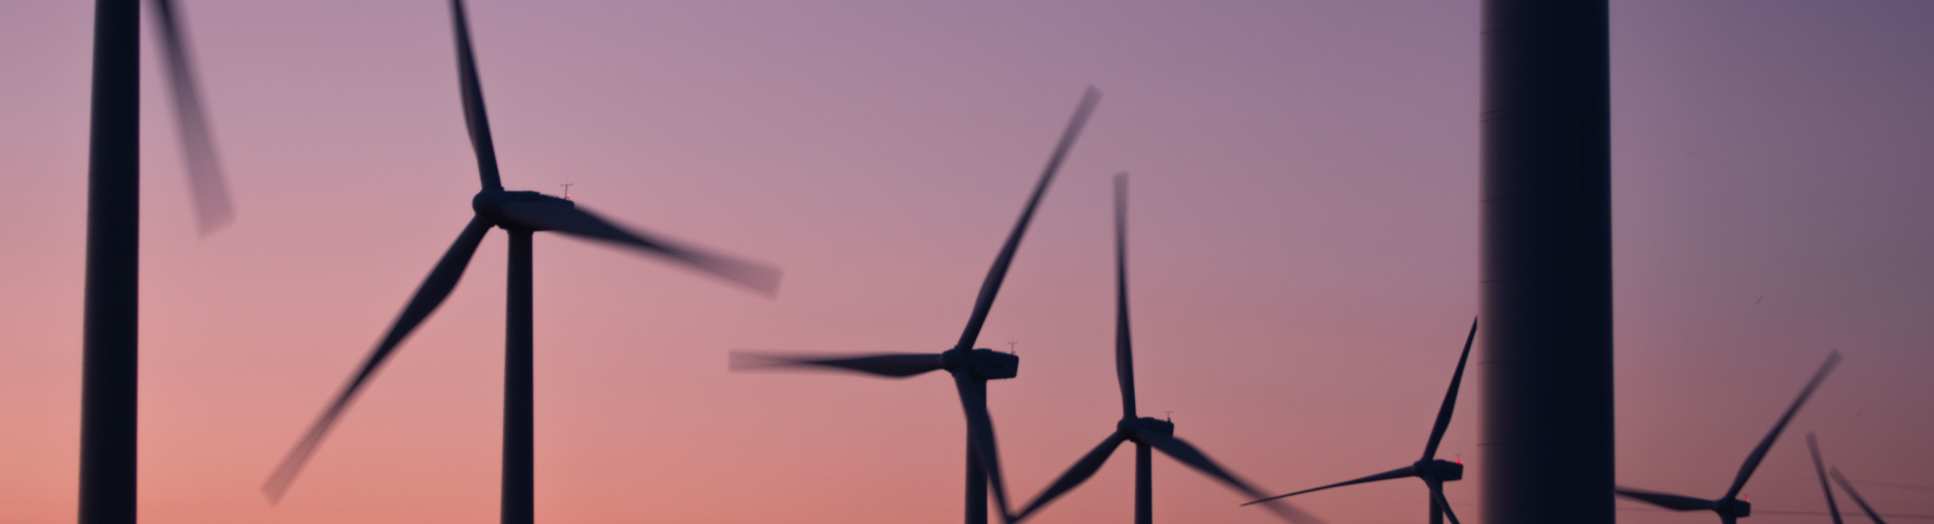 Wind turbines at dusk